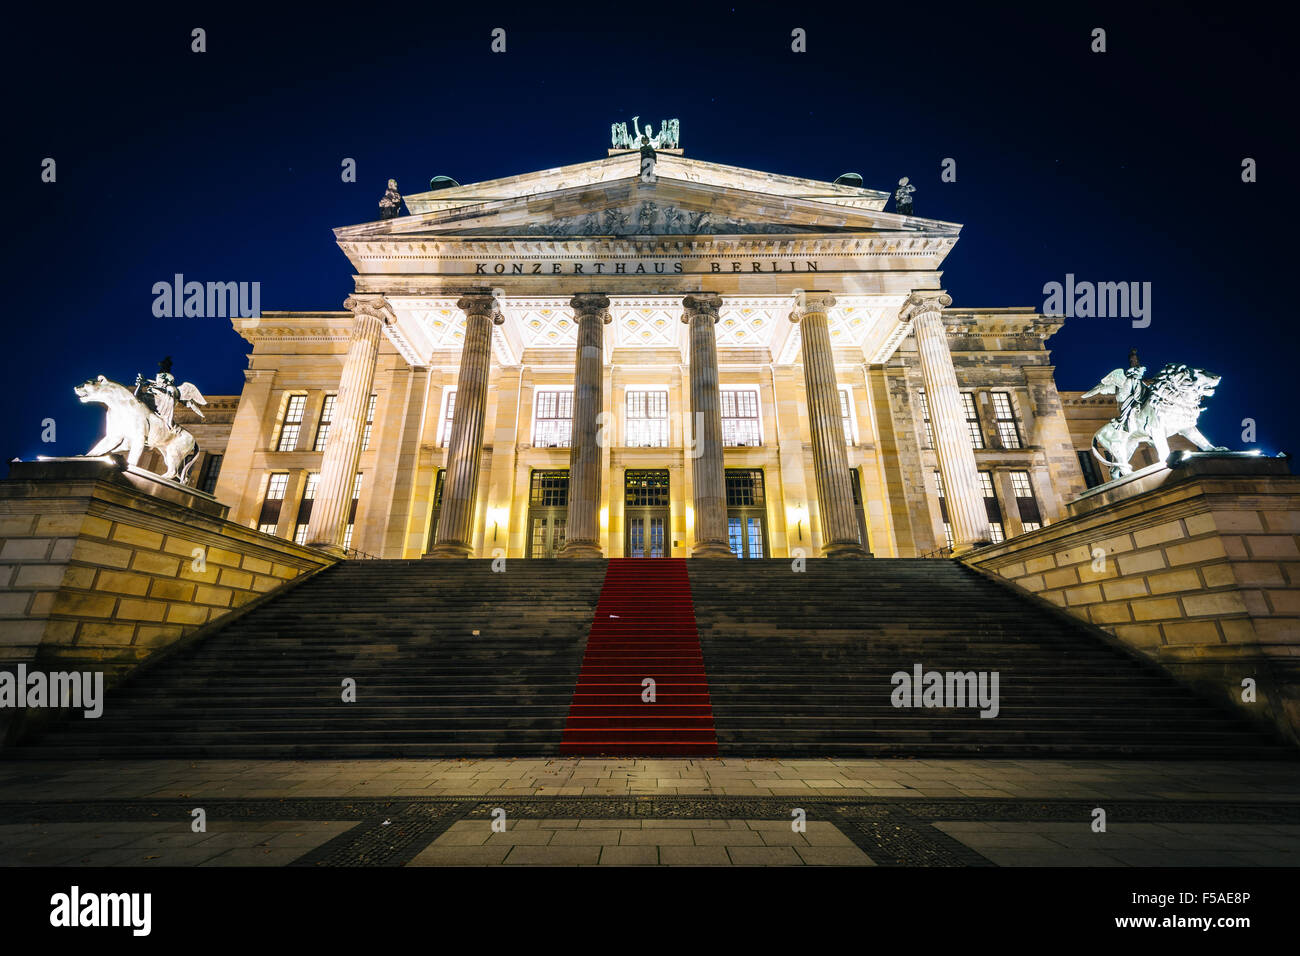 Das Konzerthaus Berlin in der Nacht, am Gendarmenmarkt in Berlin, Deutschland. Stockfoto